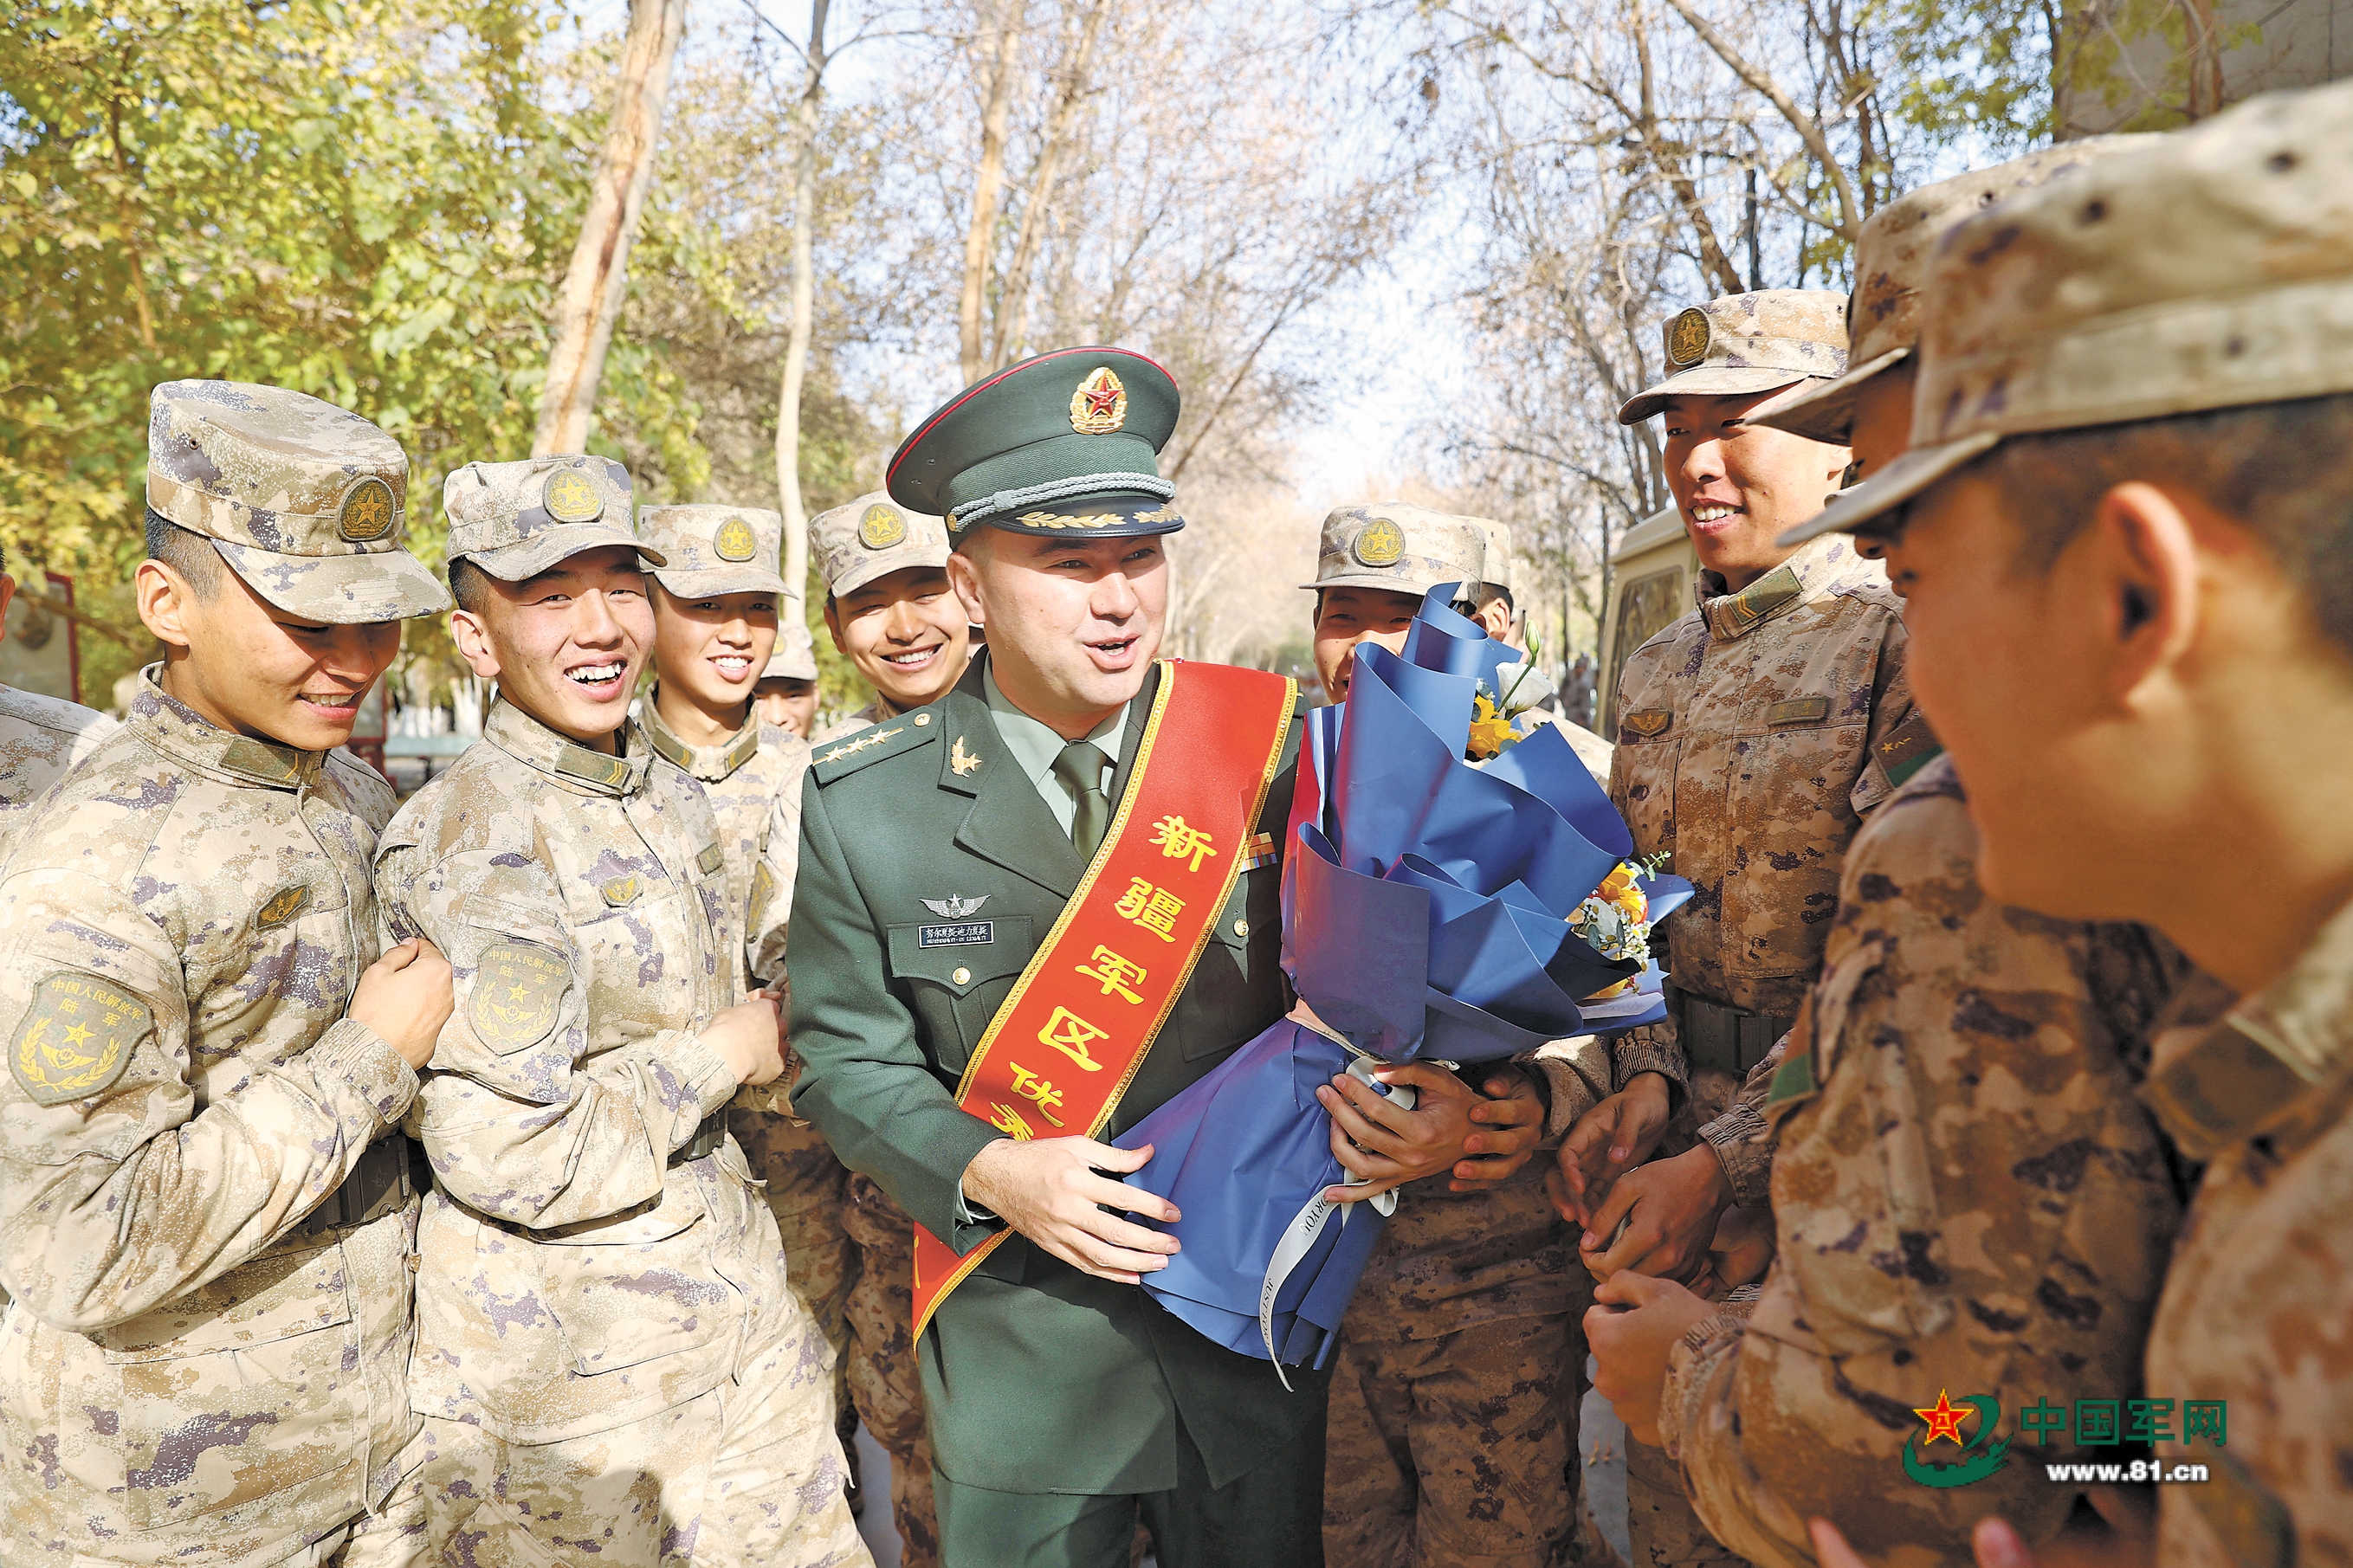 新疆军区某红军团荣立二等功的连长讲述荣誉背后的故事